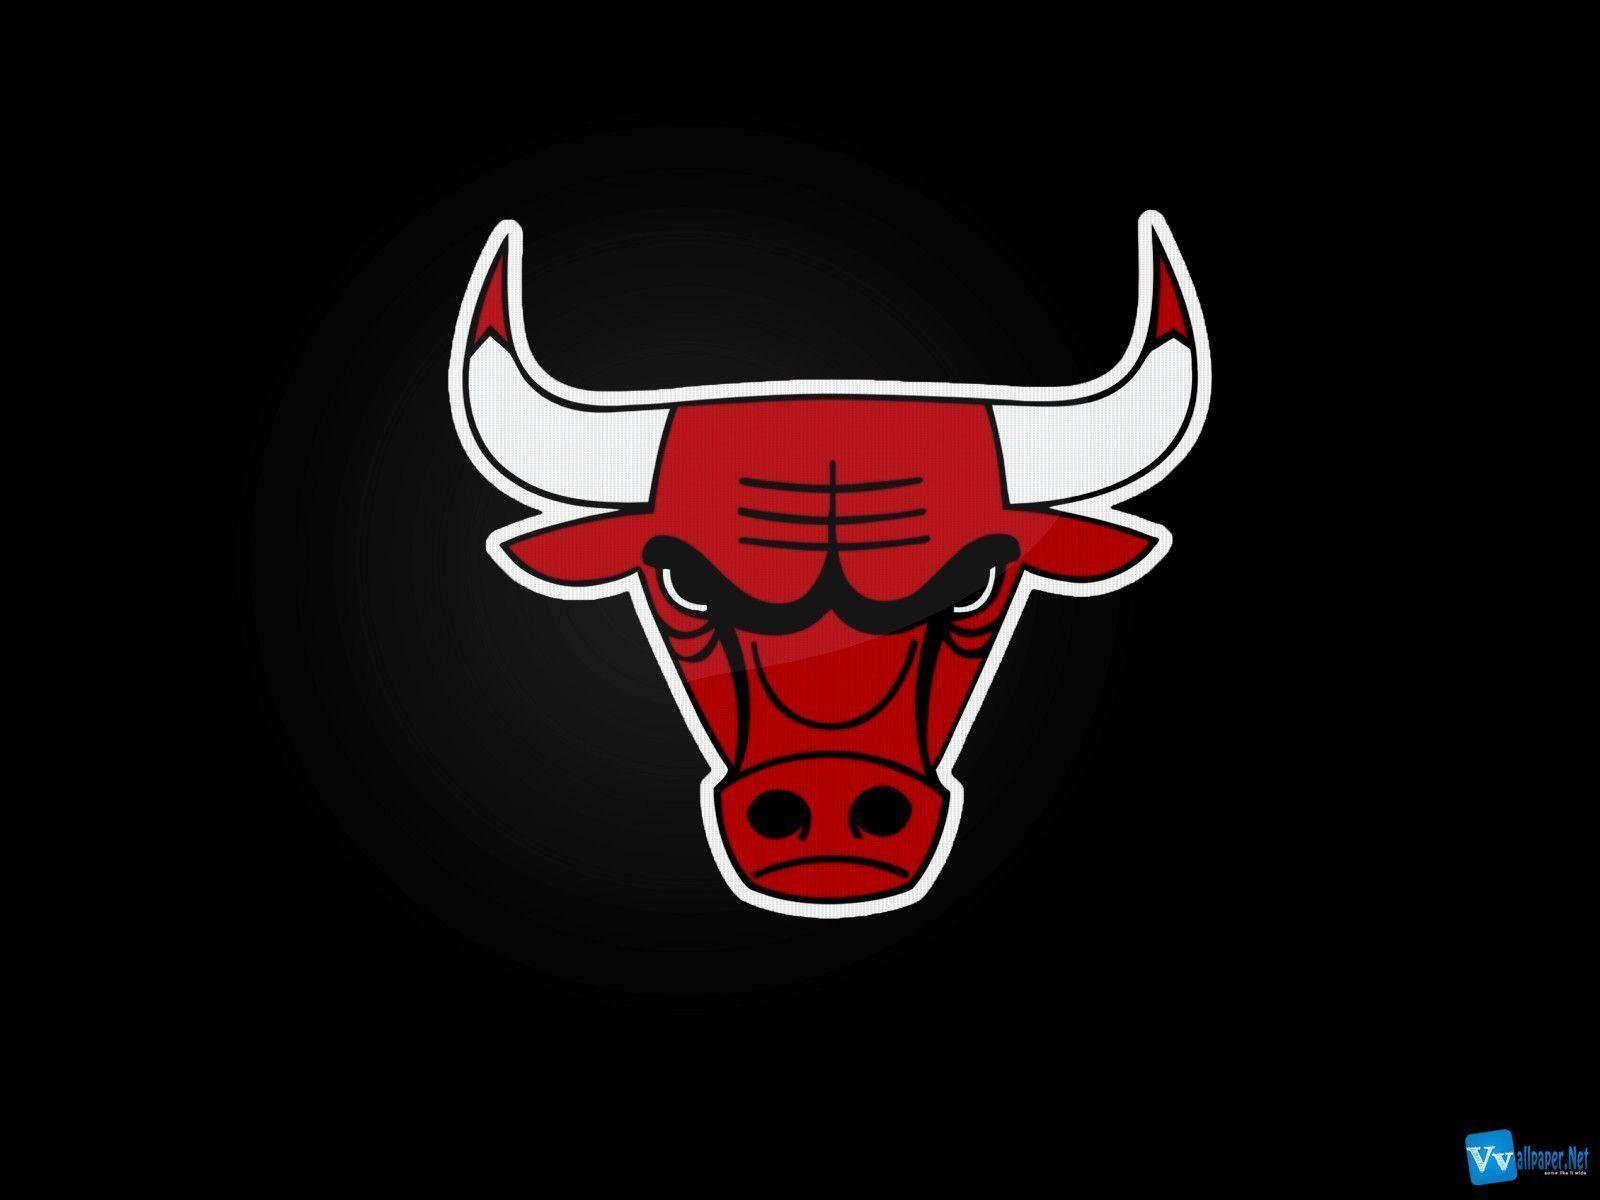 Bulls Logo Black Background Wallpaper